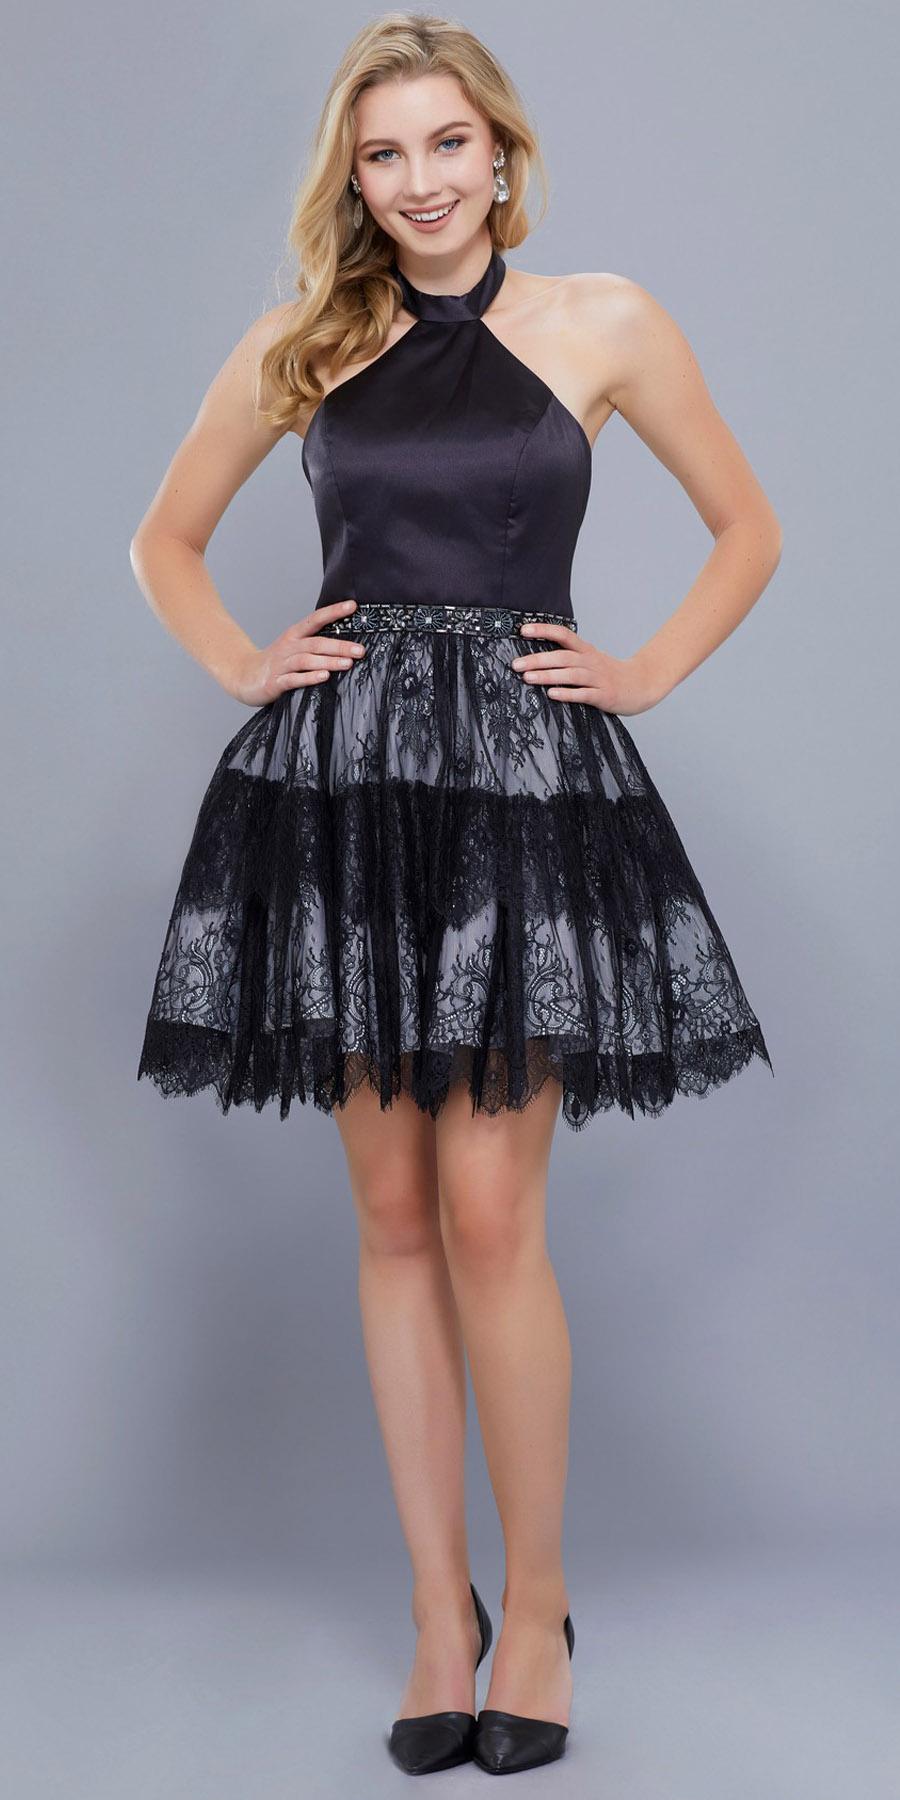 Lace Skirt Short Halter Homecoming Dress Embellished Waist Black-Silver